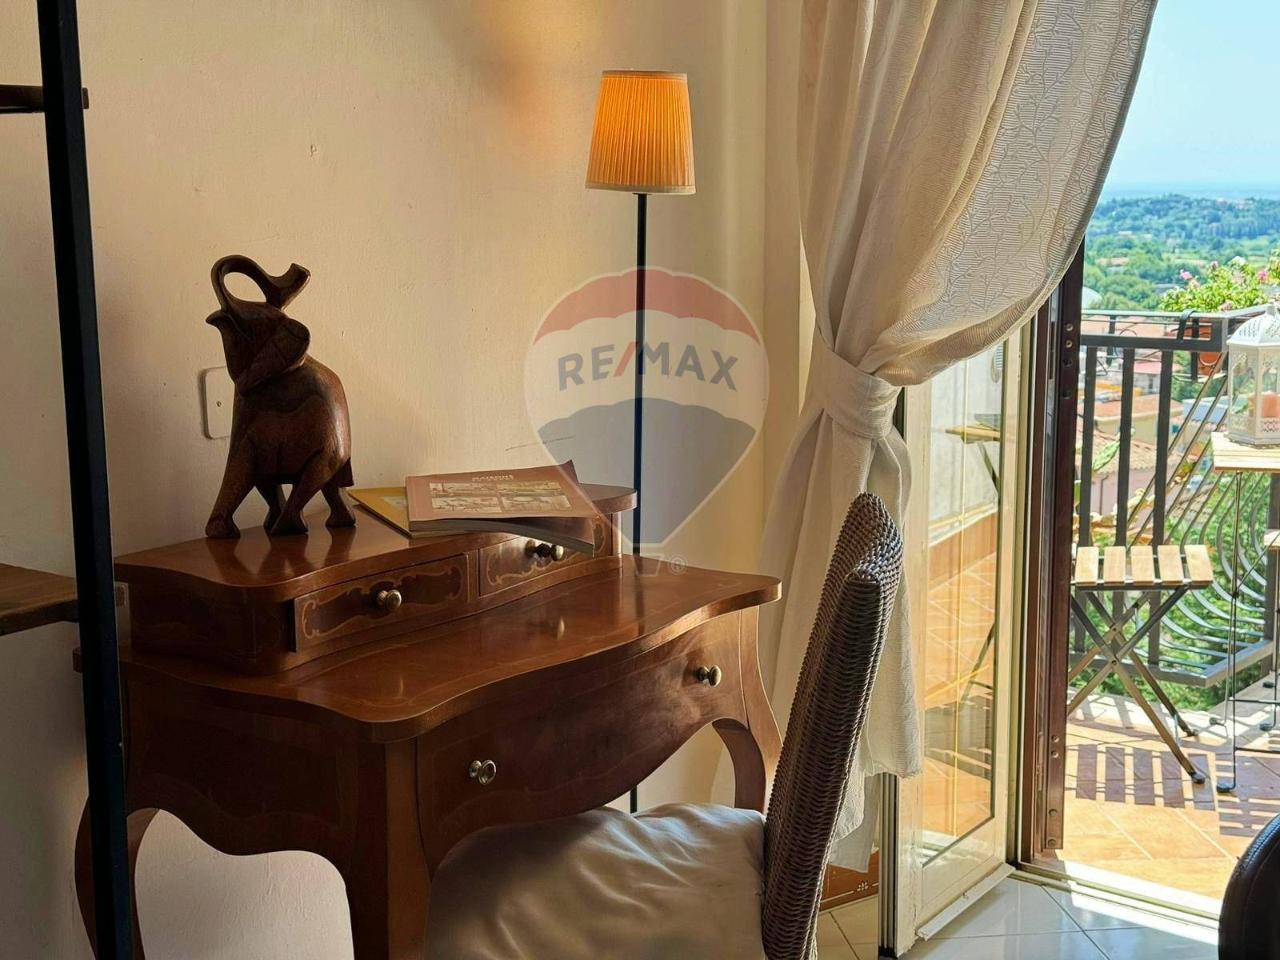 Appartamento in vendita a Genzano Di Roma